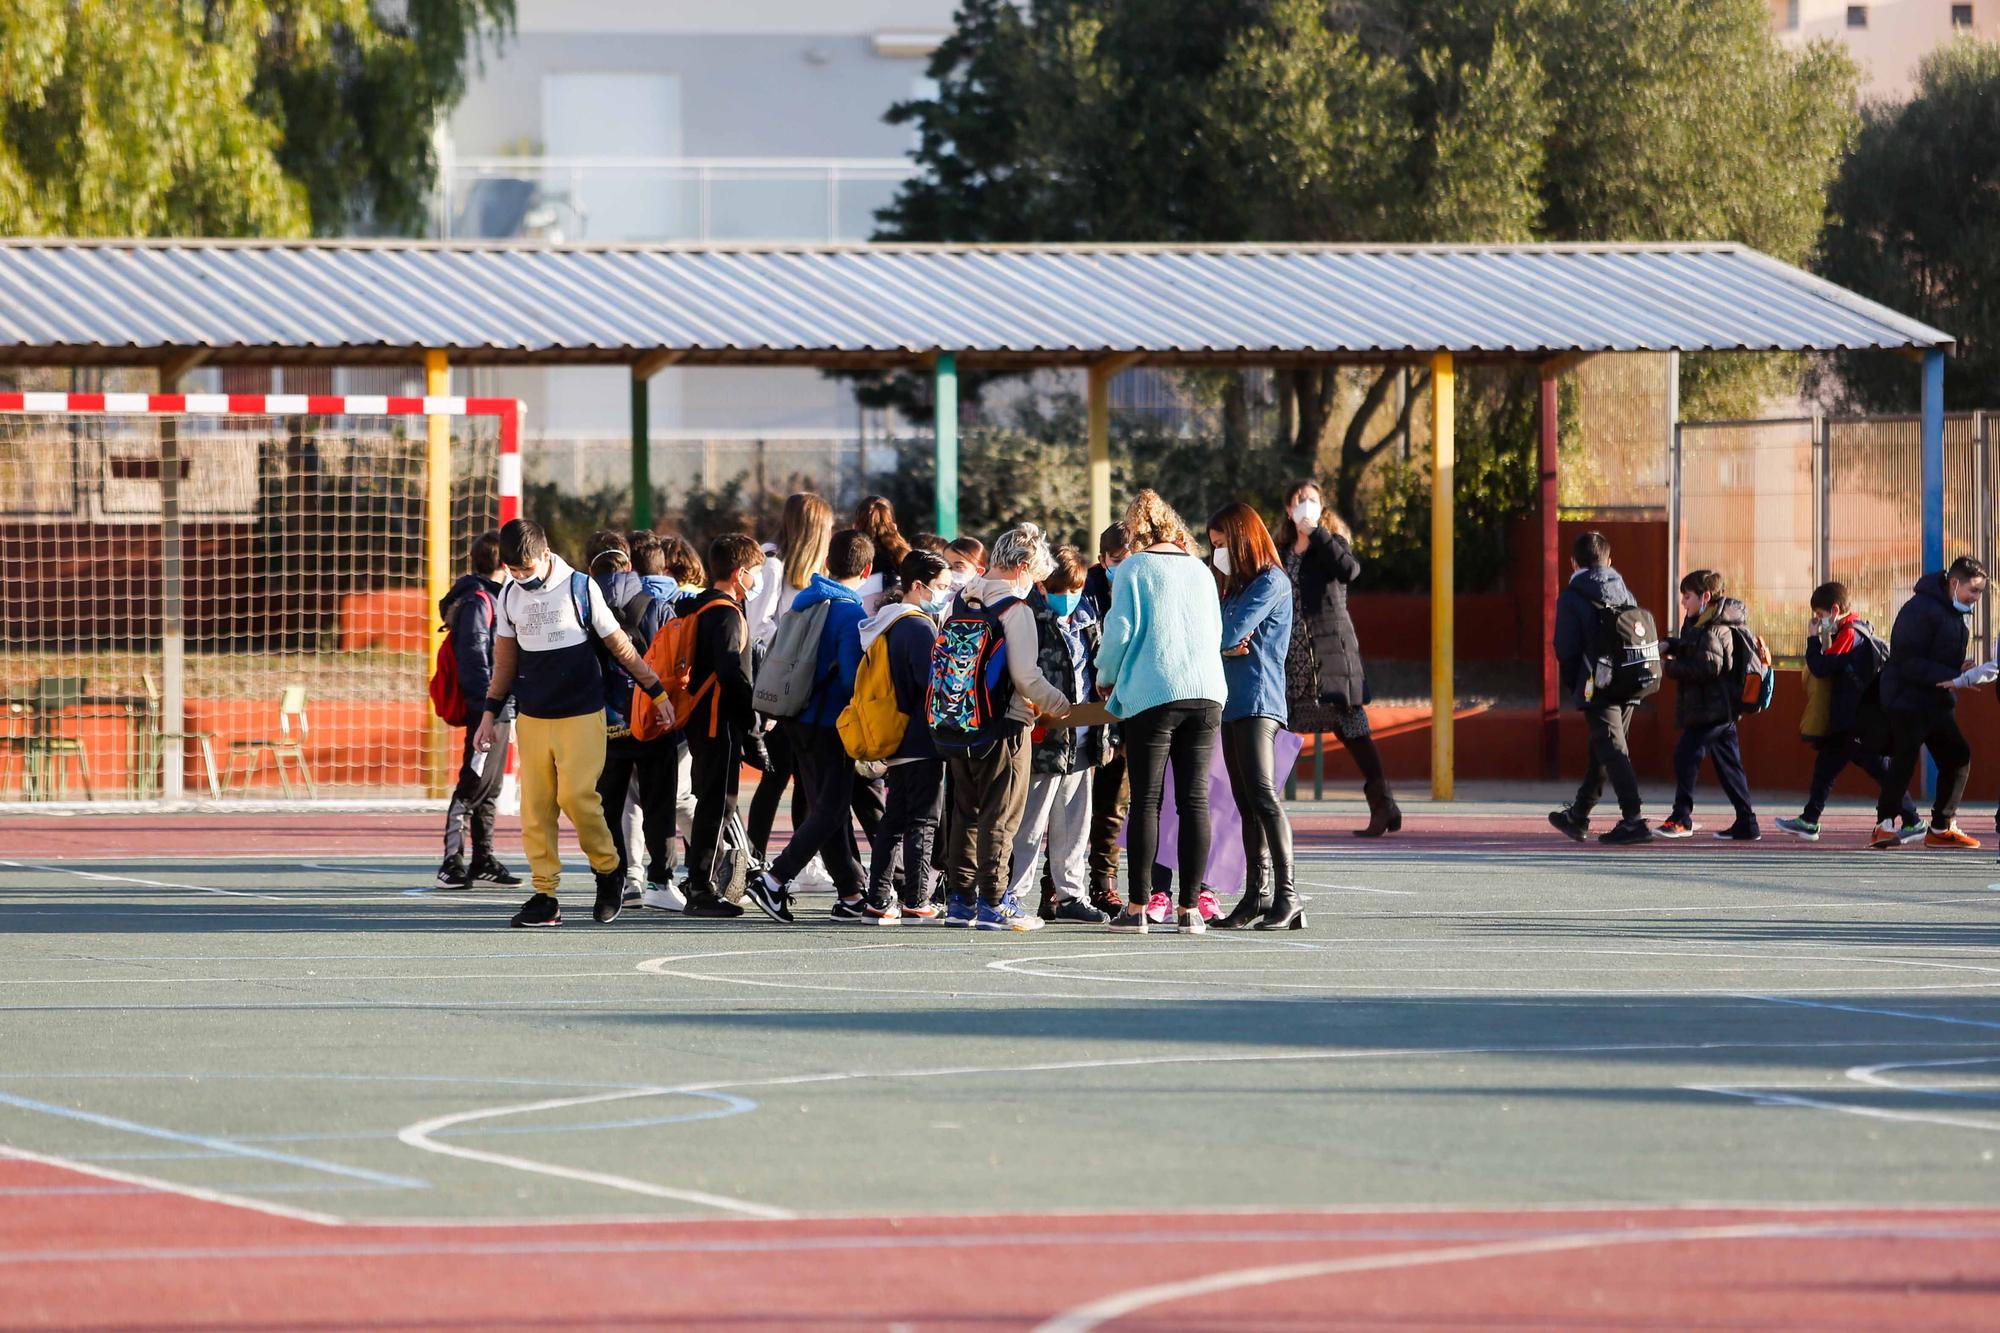 Primer sin mascarillas en los patios de los colegios de Ibiza